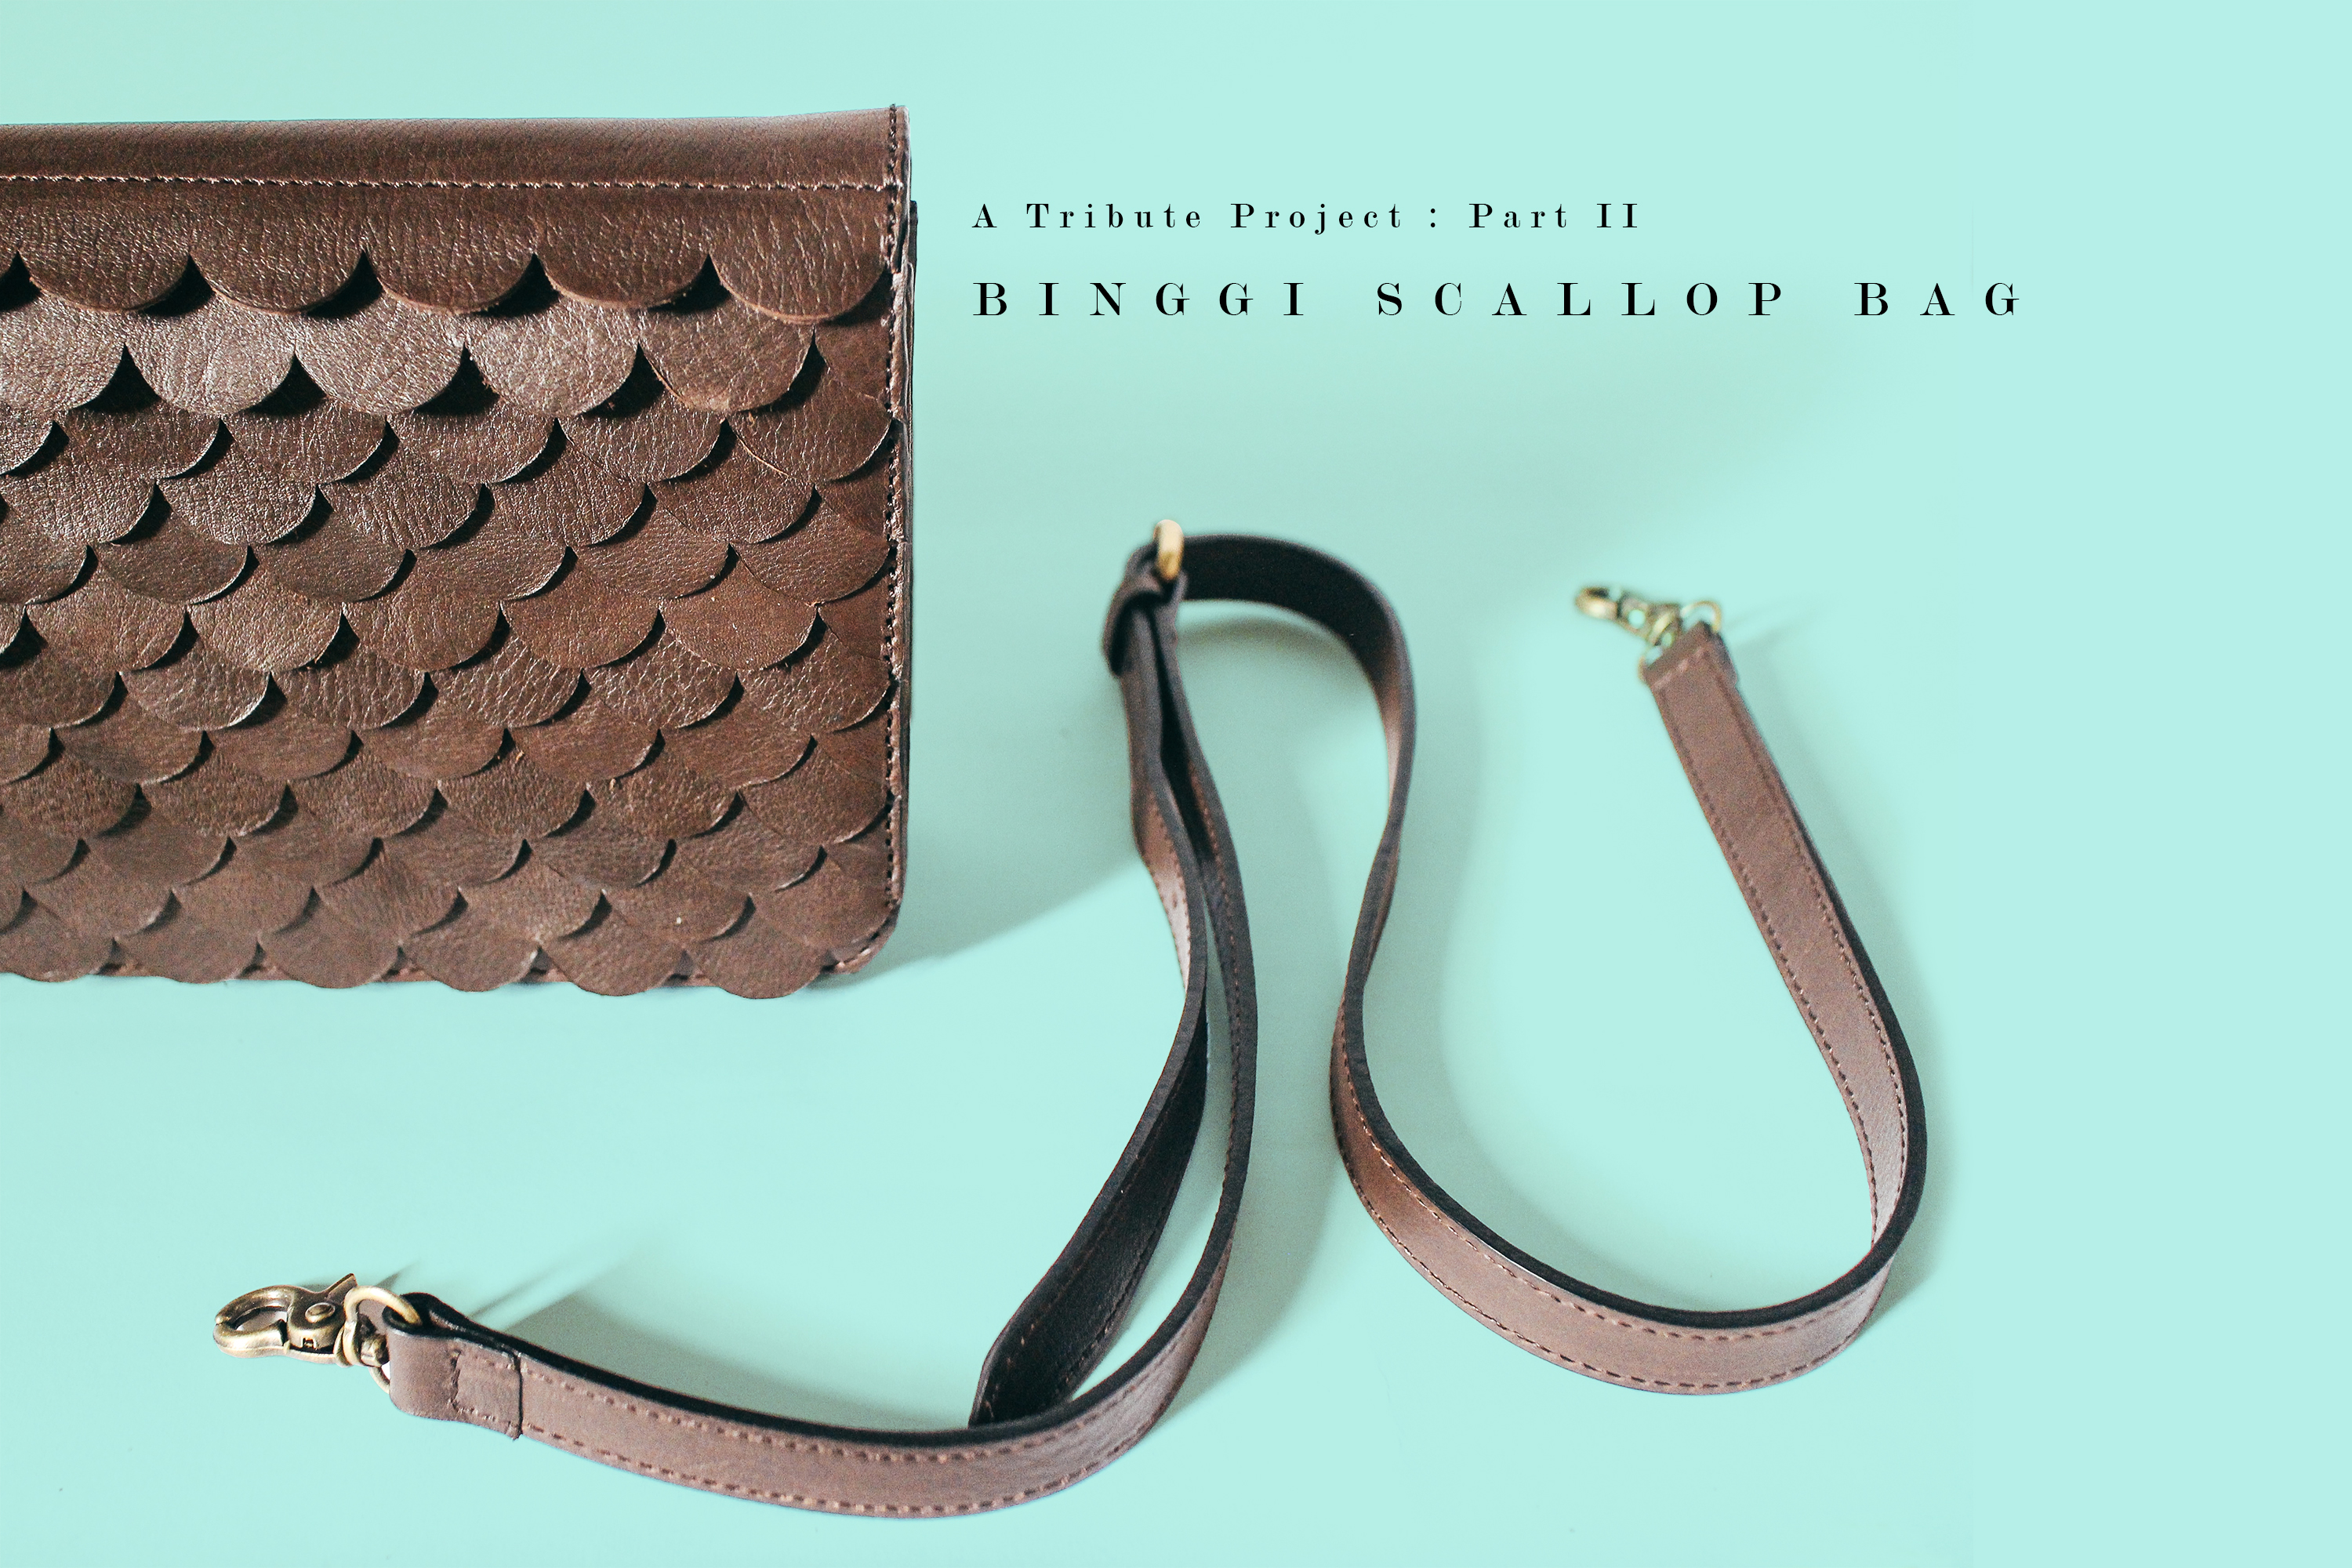 Binggi’s Scallop Bag